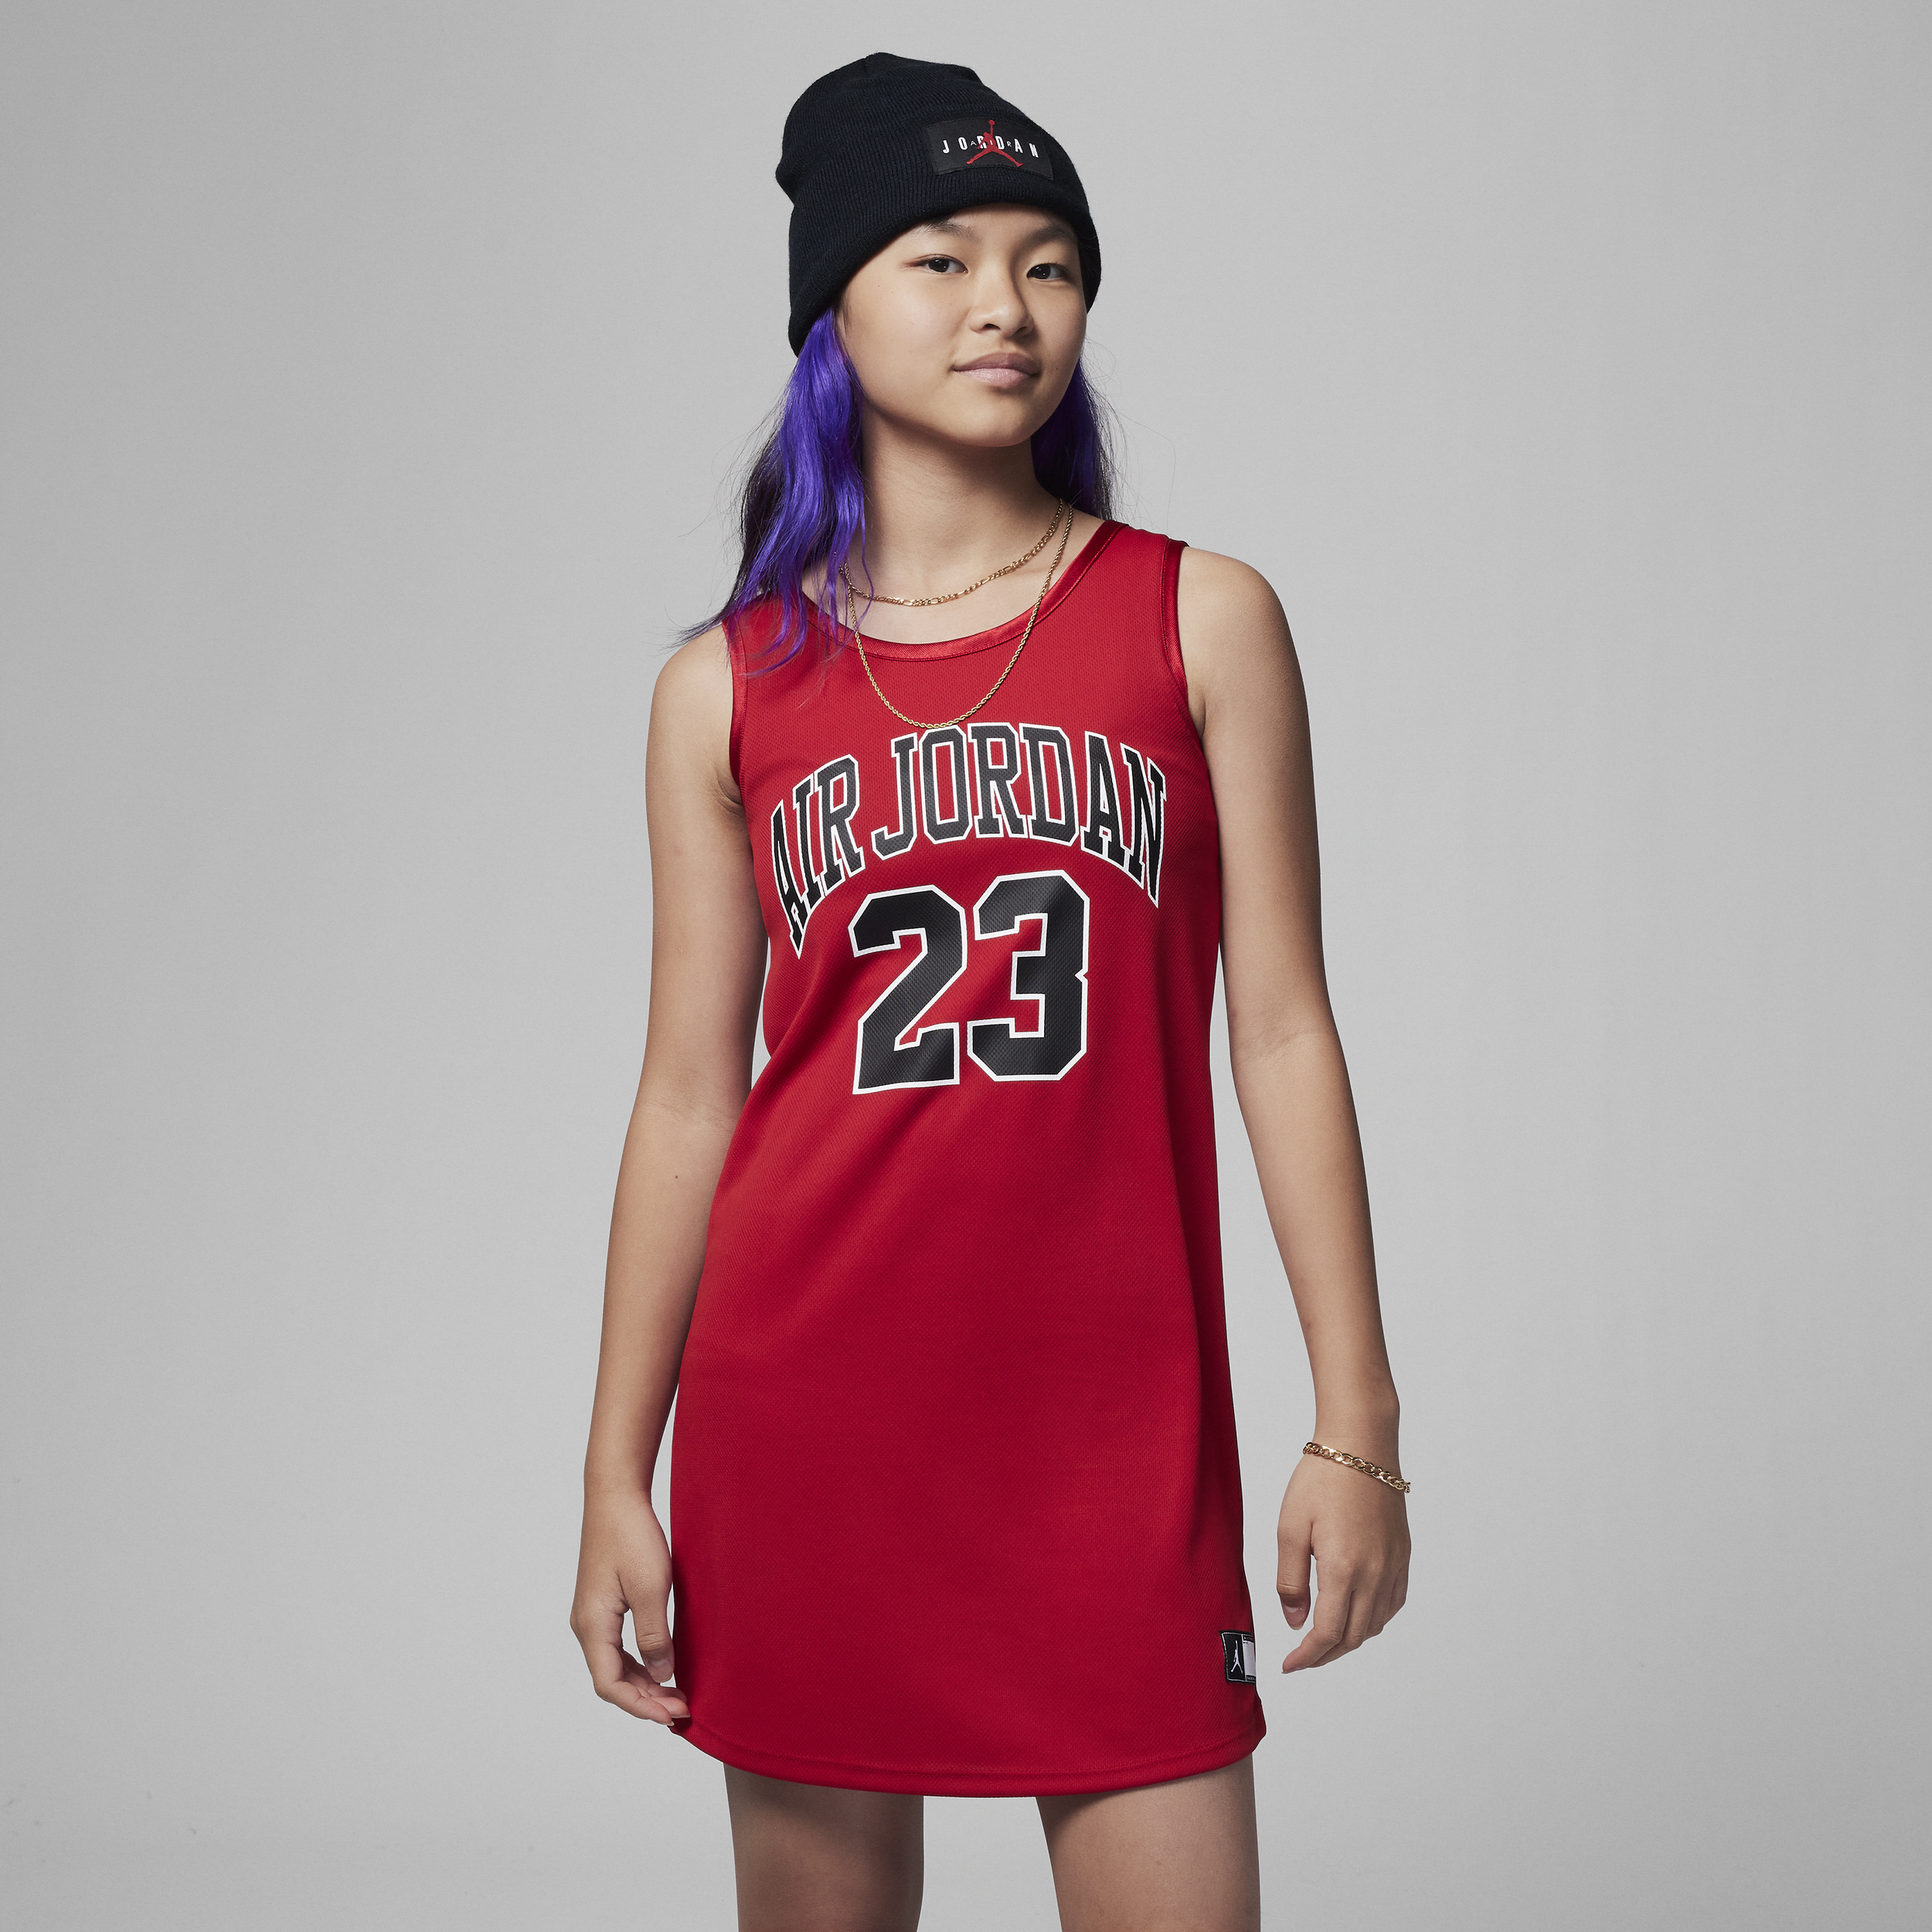 Jordan-kjole til større børn (piger) - rød